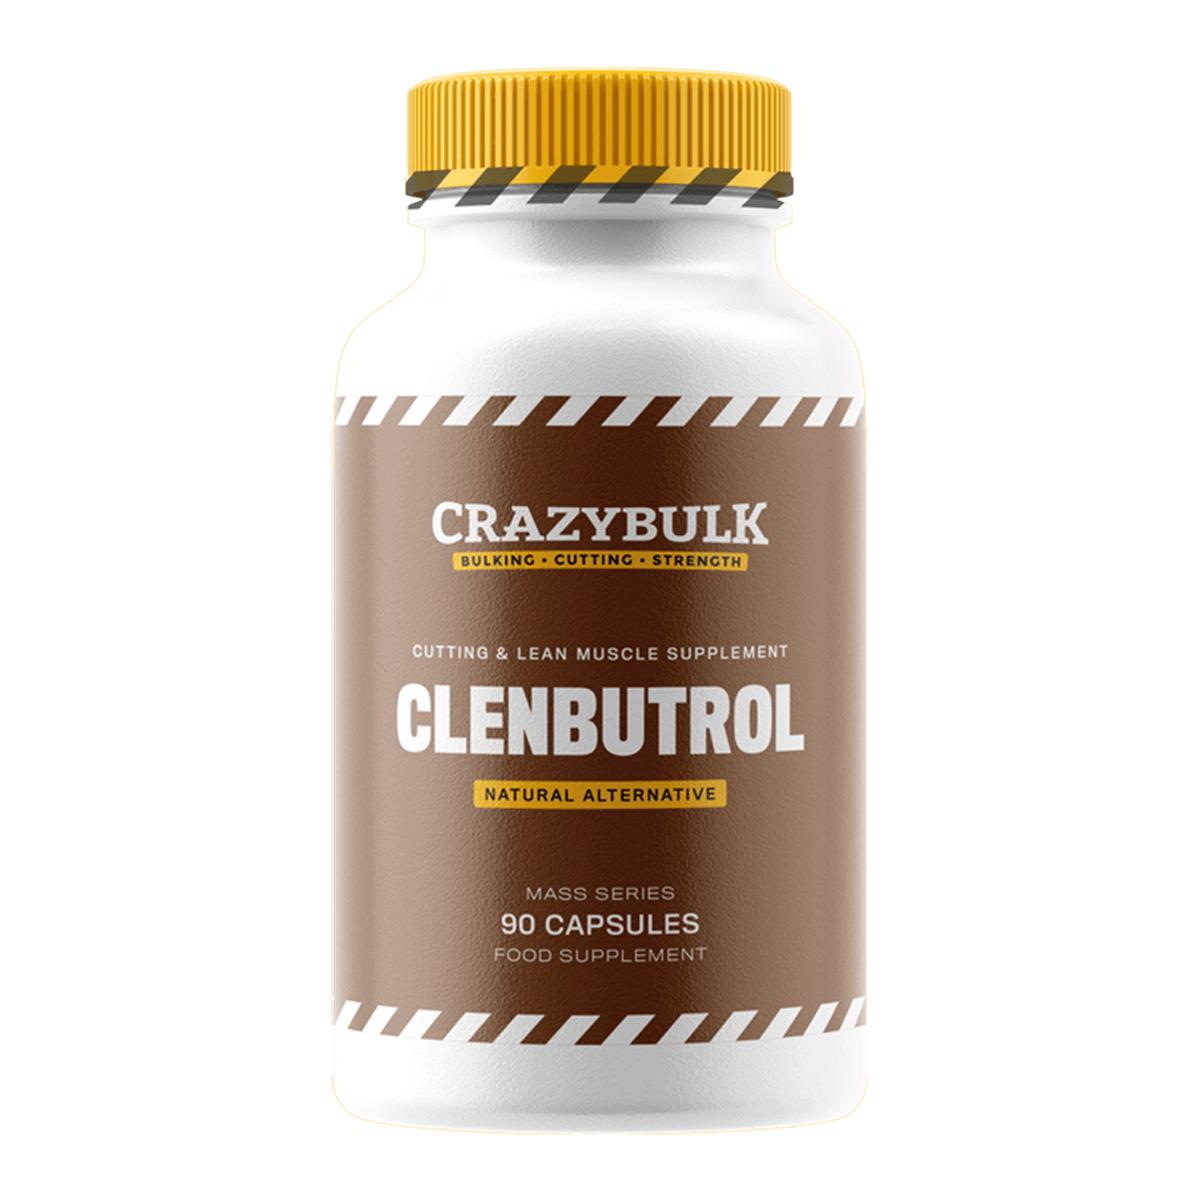 Clenbutrol-crazybulk